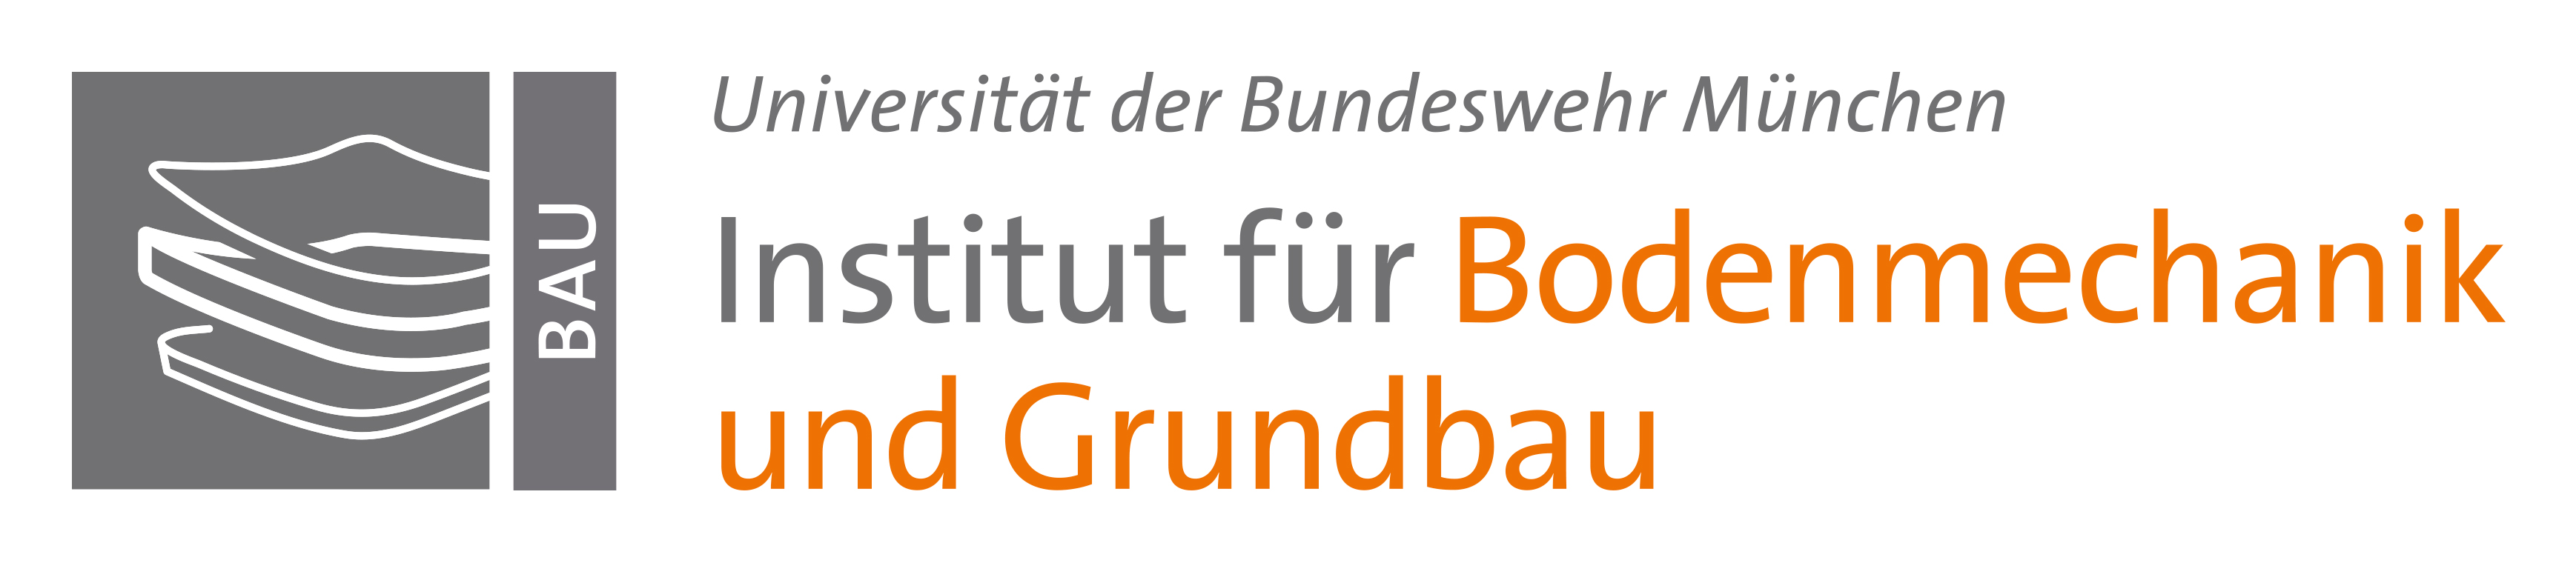 UniBwM_BAU_INST_Bodenmechanik_Grundbau.jpg